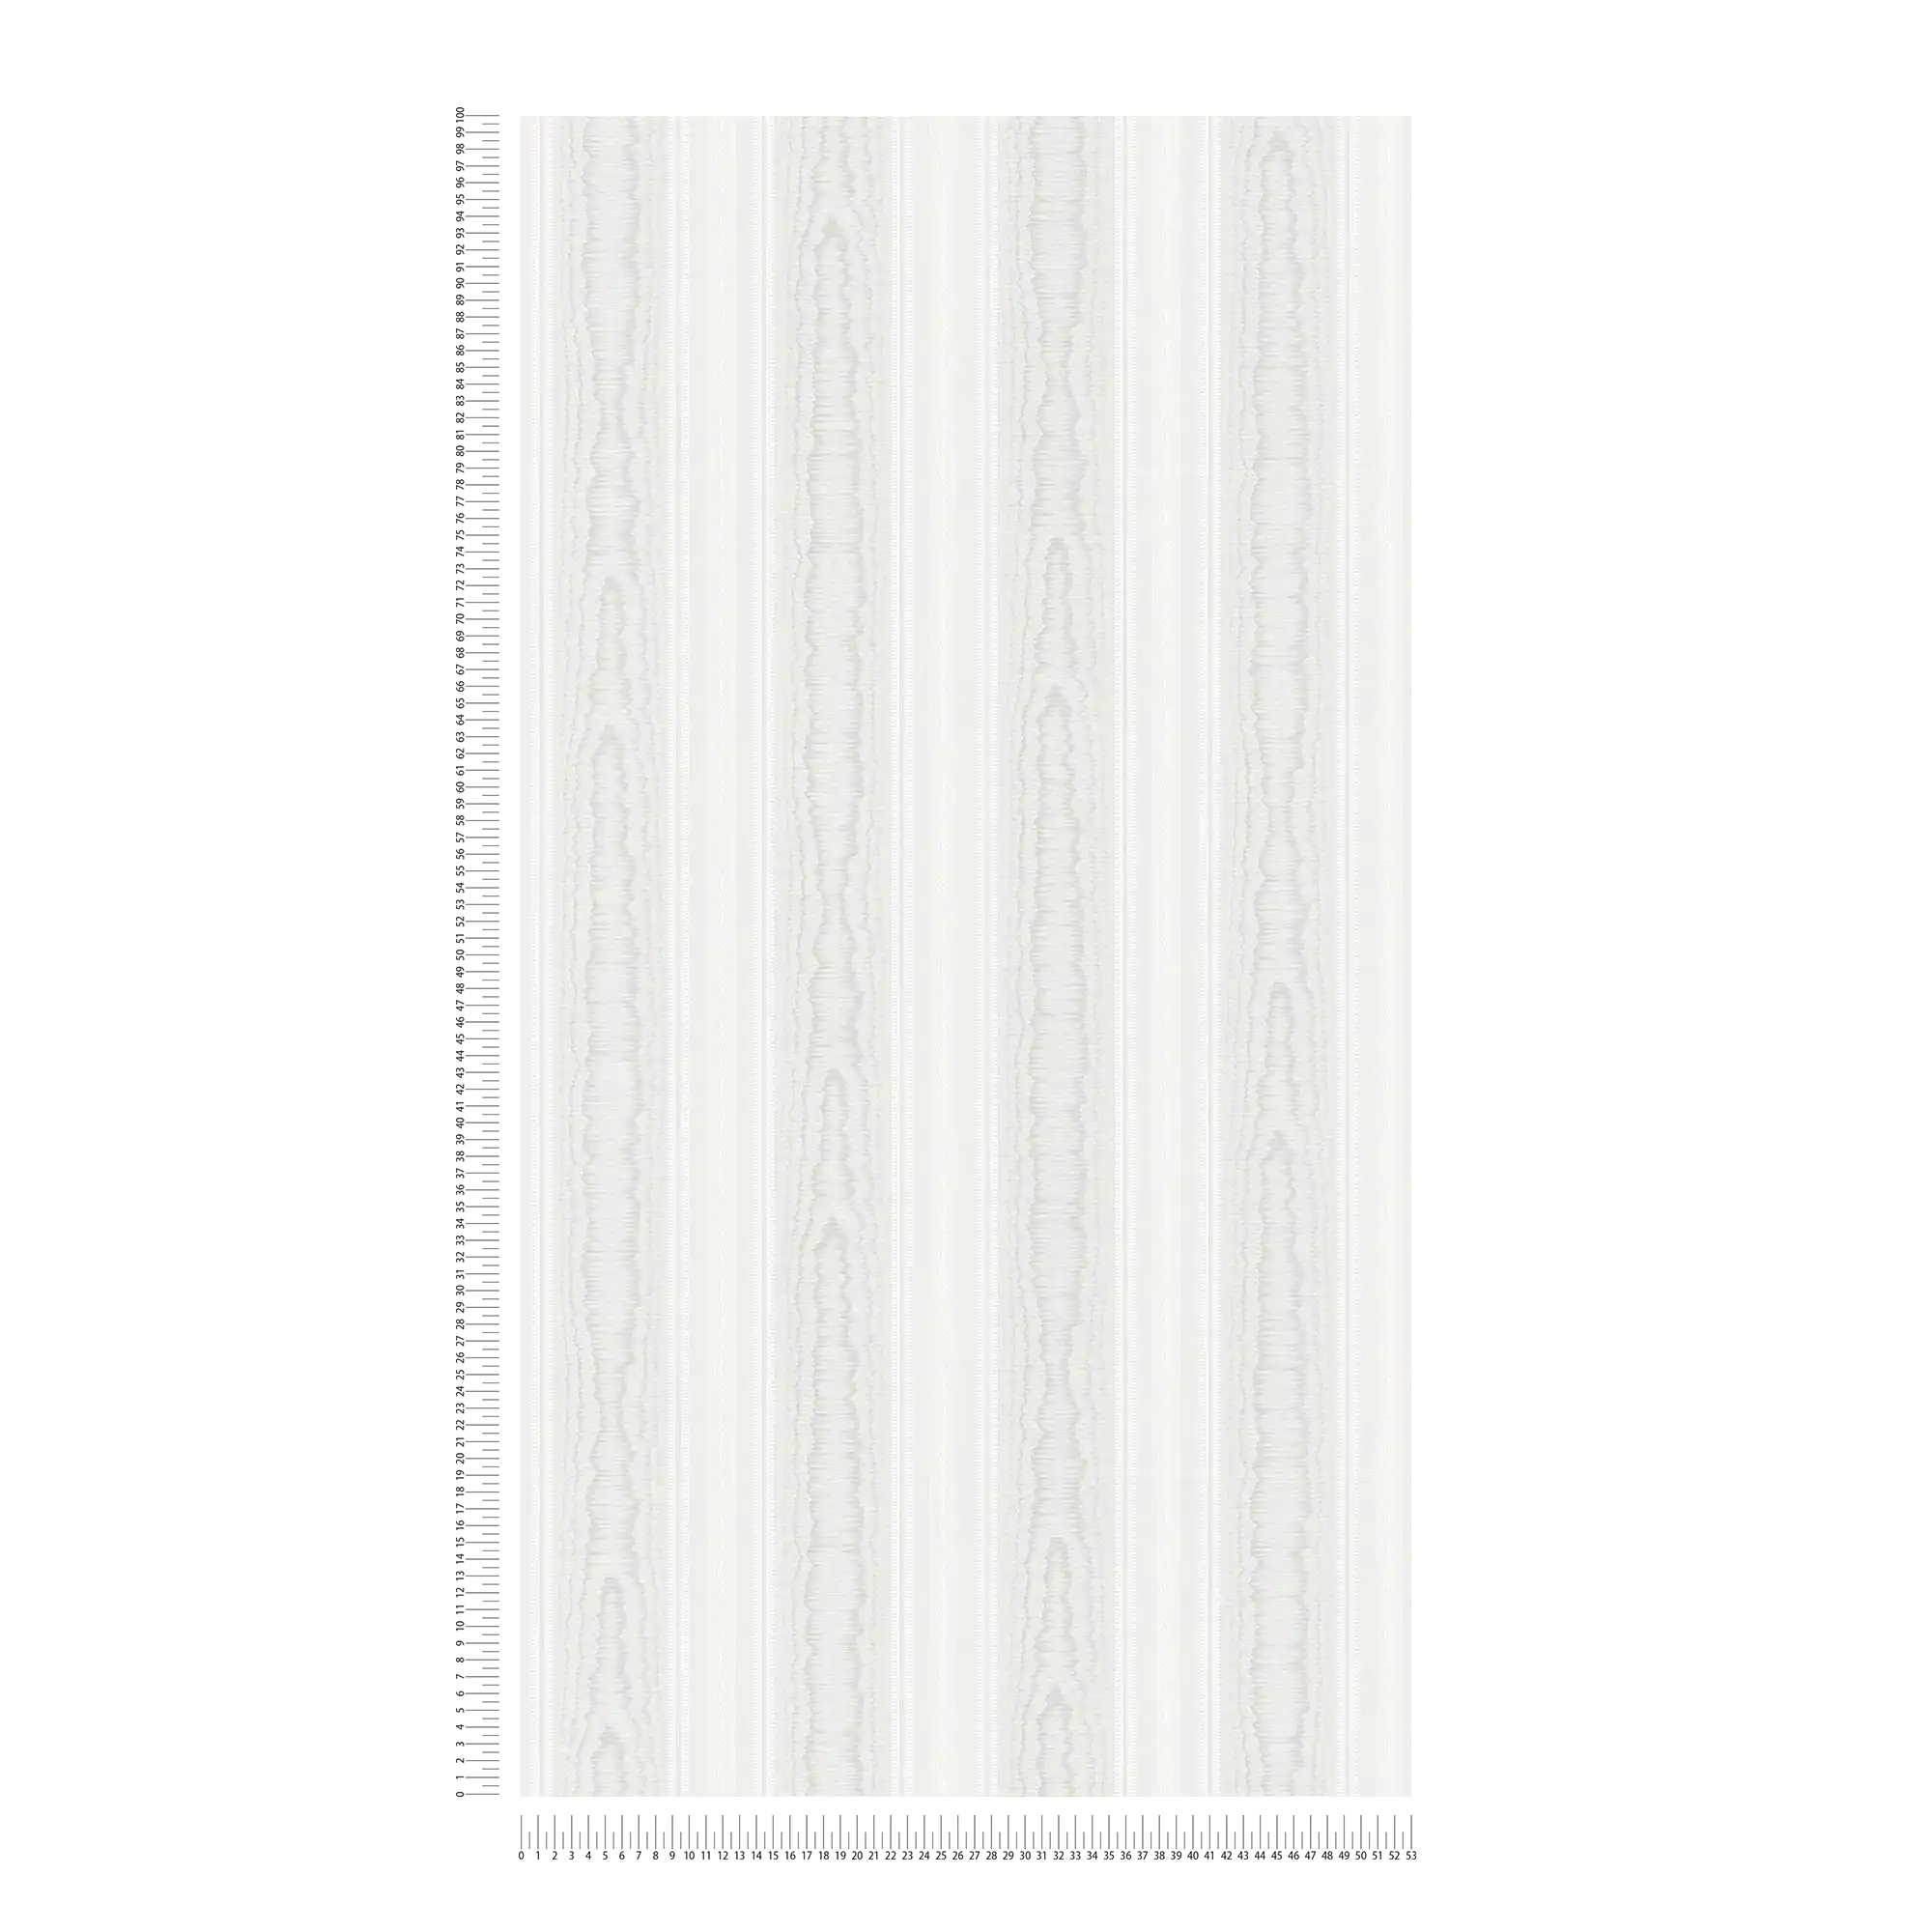             Streepjesbehang met houtmotief - crème, wit
        